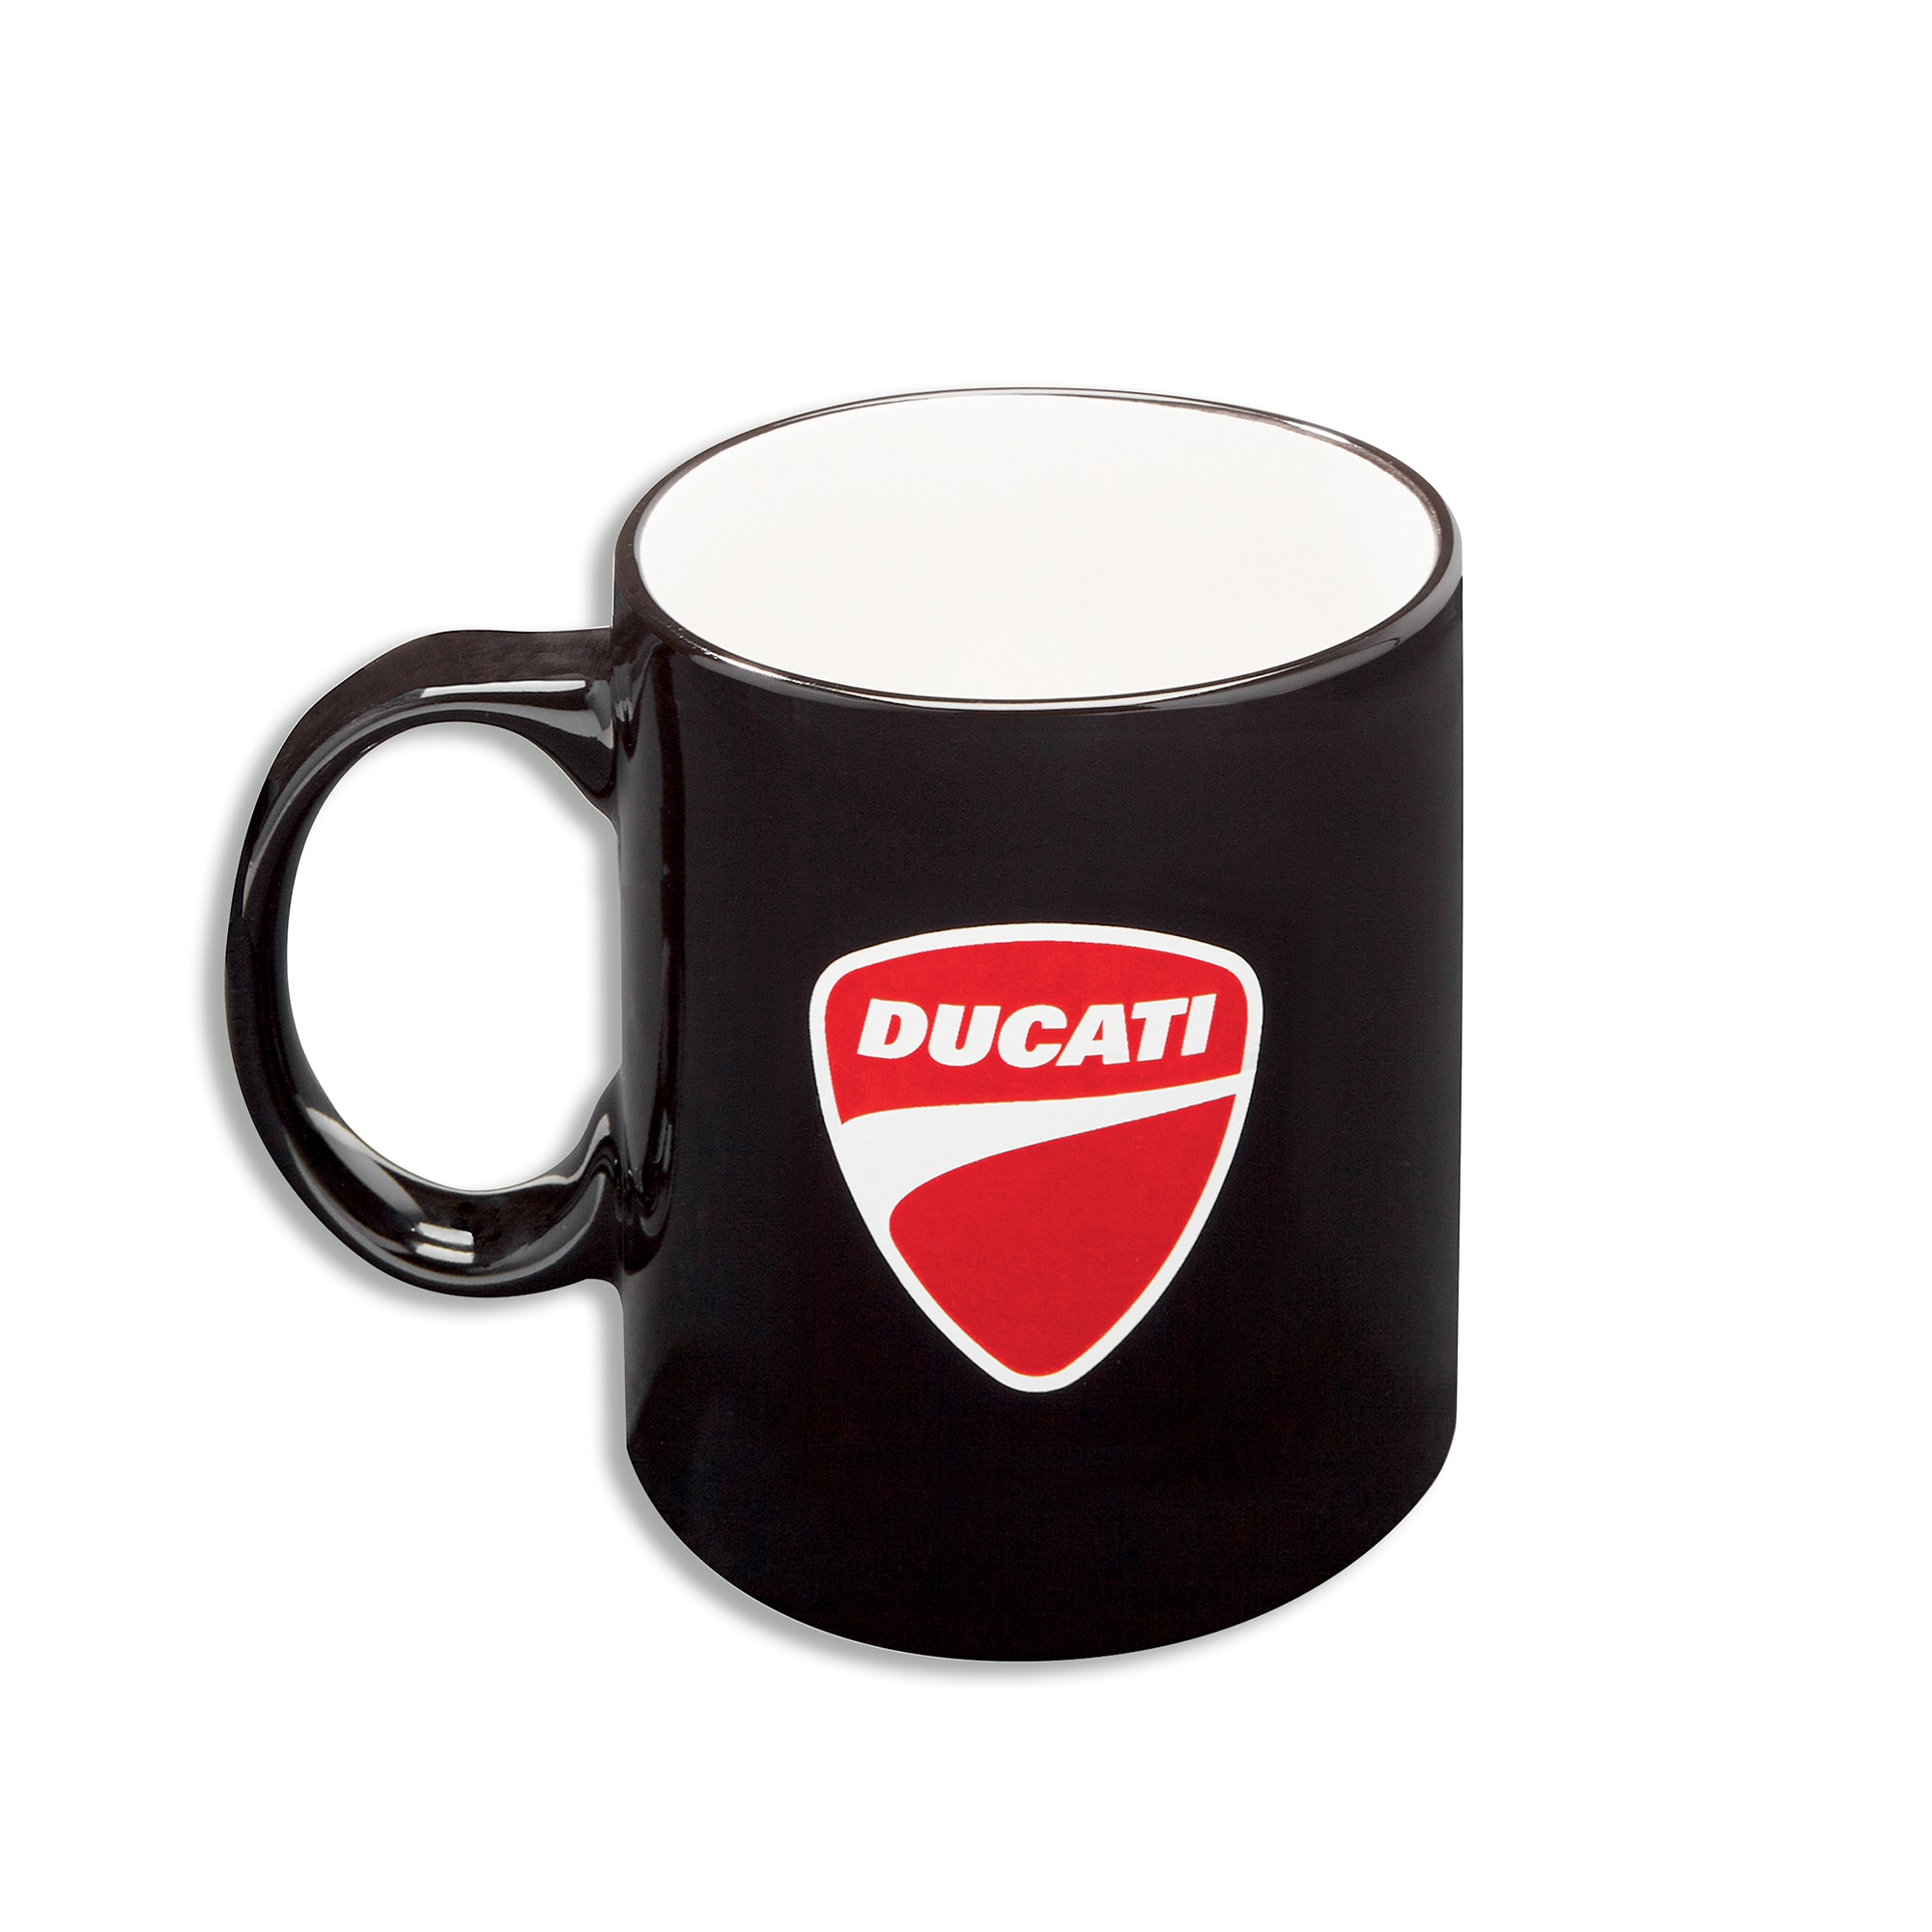 Ducati - Mug